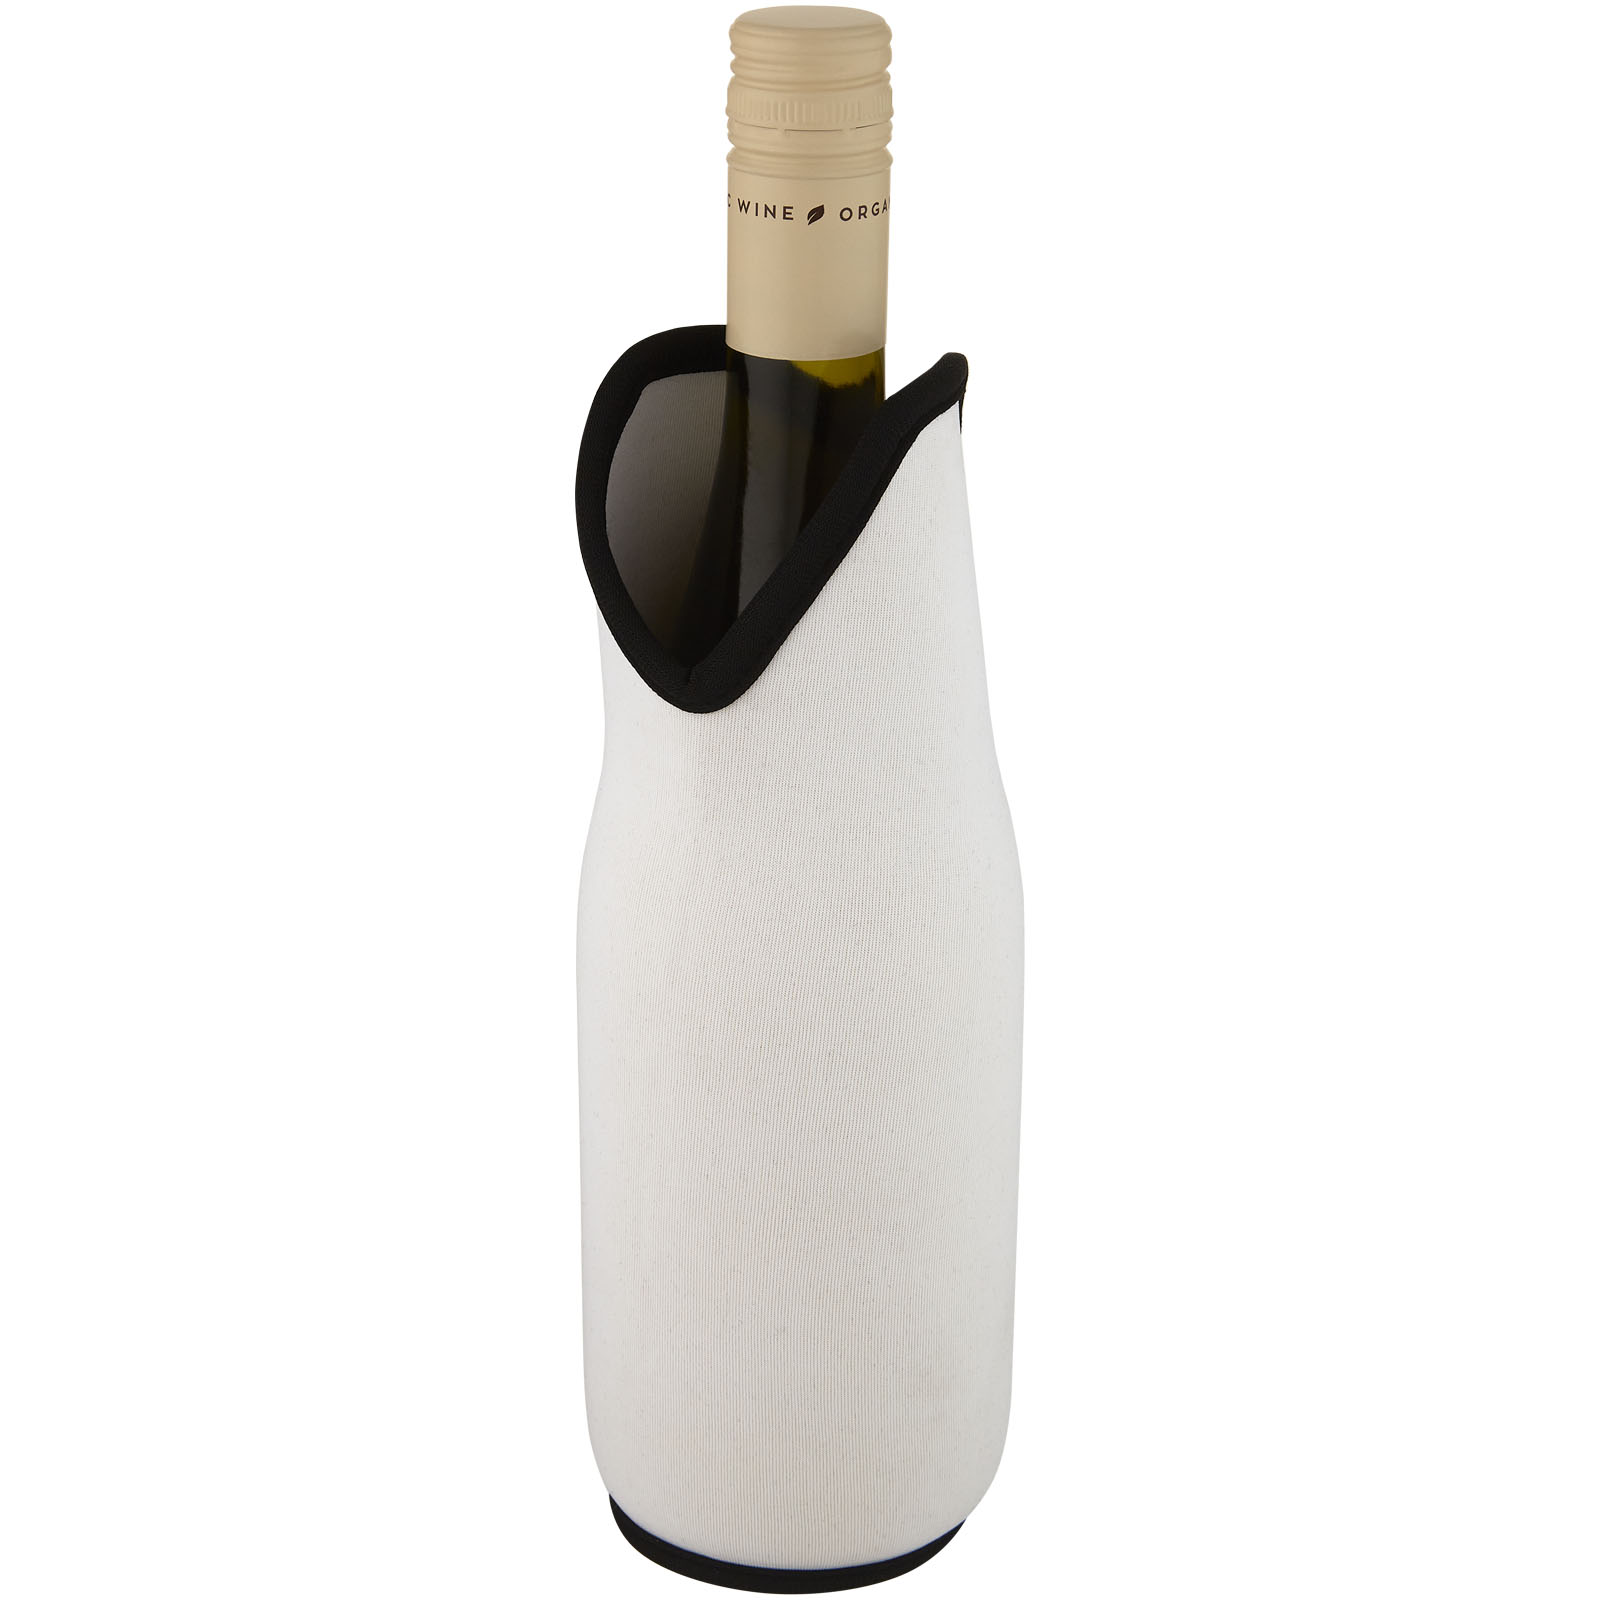 Accessoires pour le vin publicitaires - Manchon Noun en néoprène recyclé pour bouteille de vin - 0